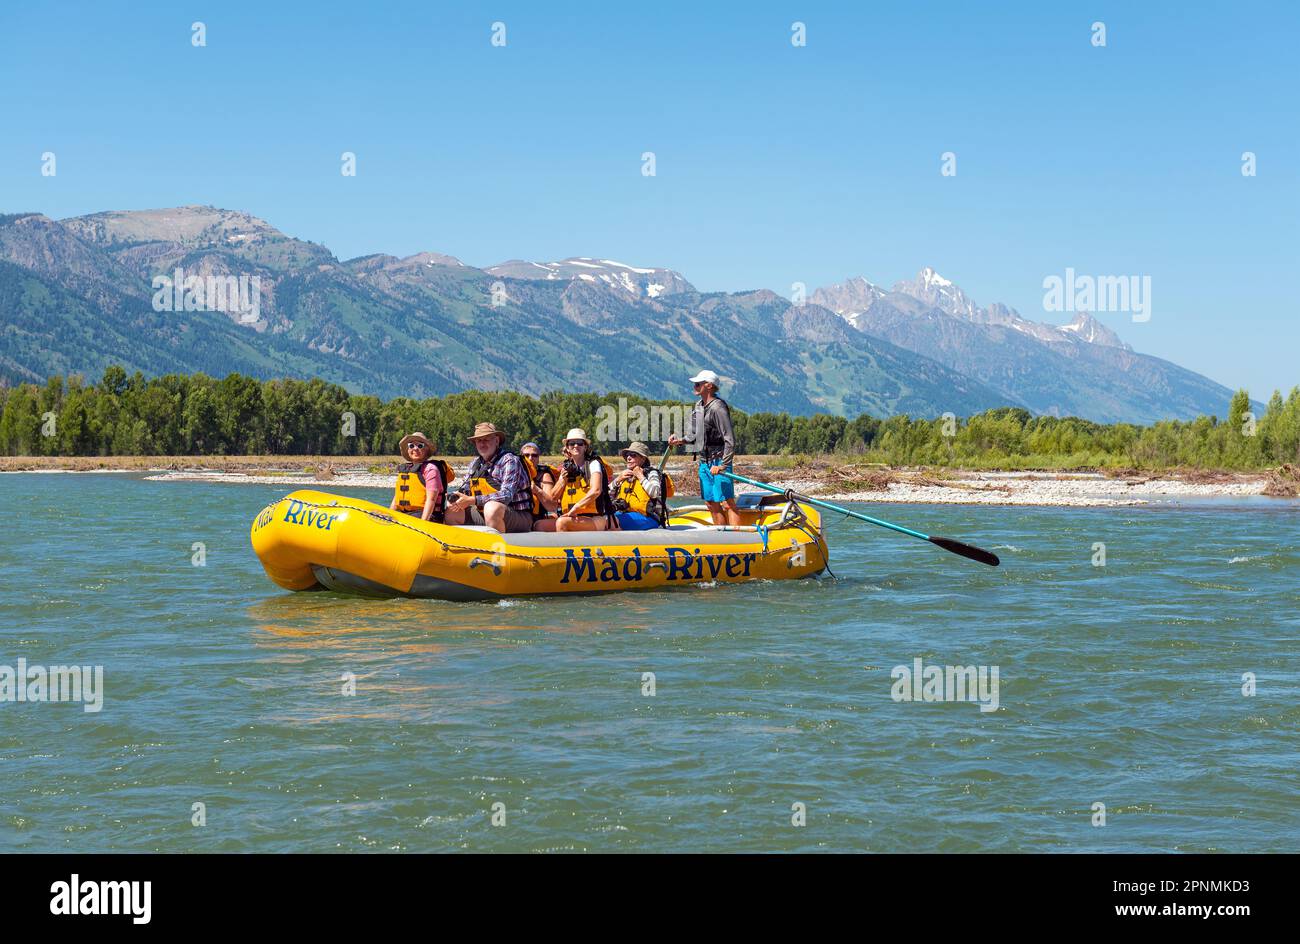 Turisti in barca rigida gonfiabile sul fiume Snake rafting panoramico con la catena montuosa Grand Teton, Wyoming, USA. Foto Stock